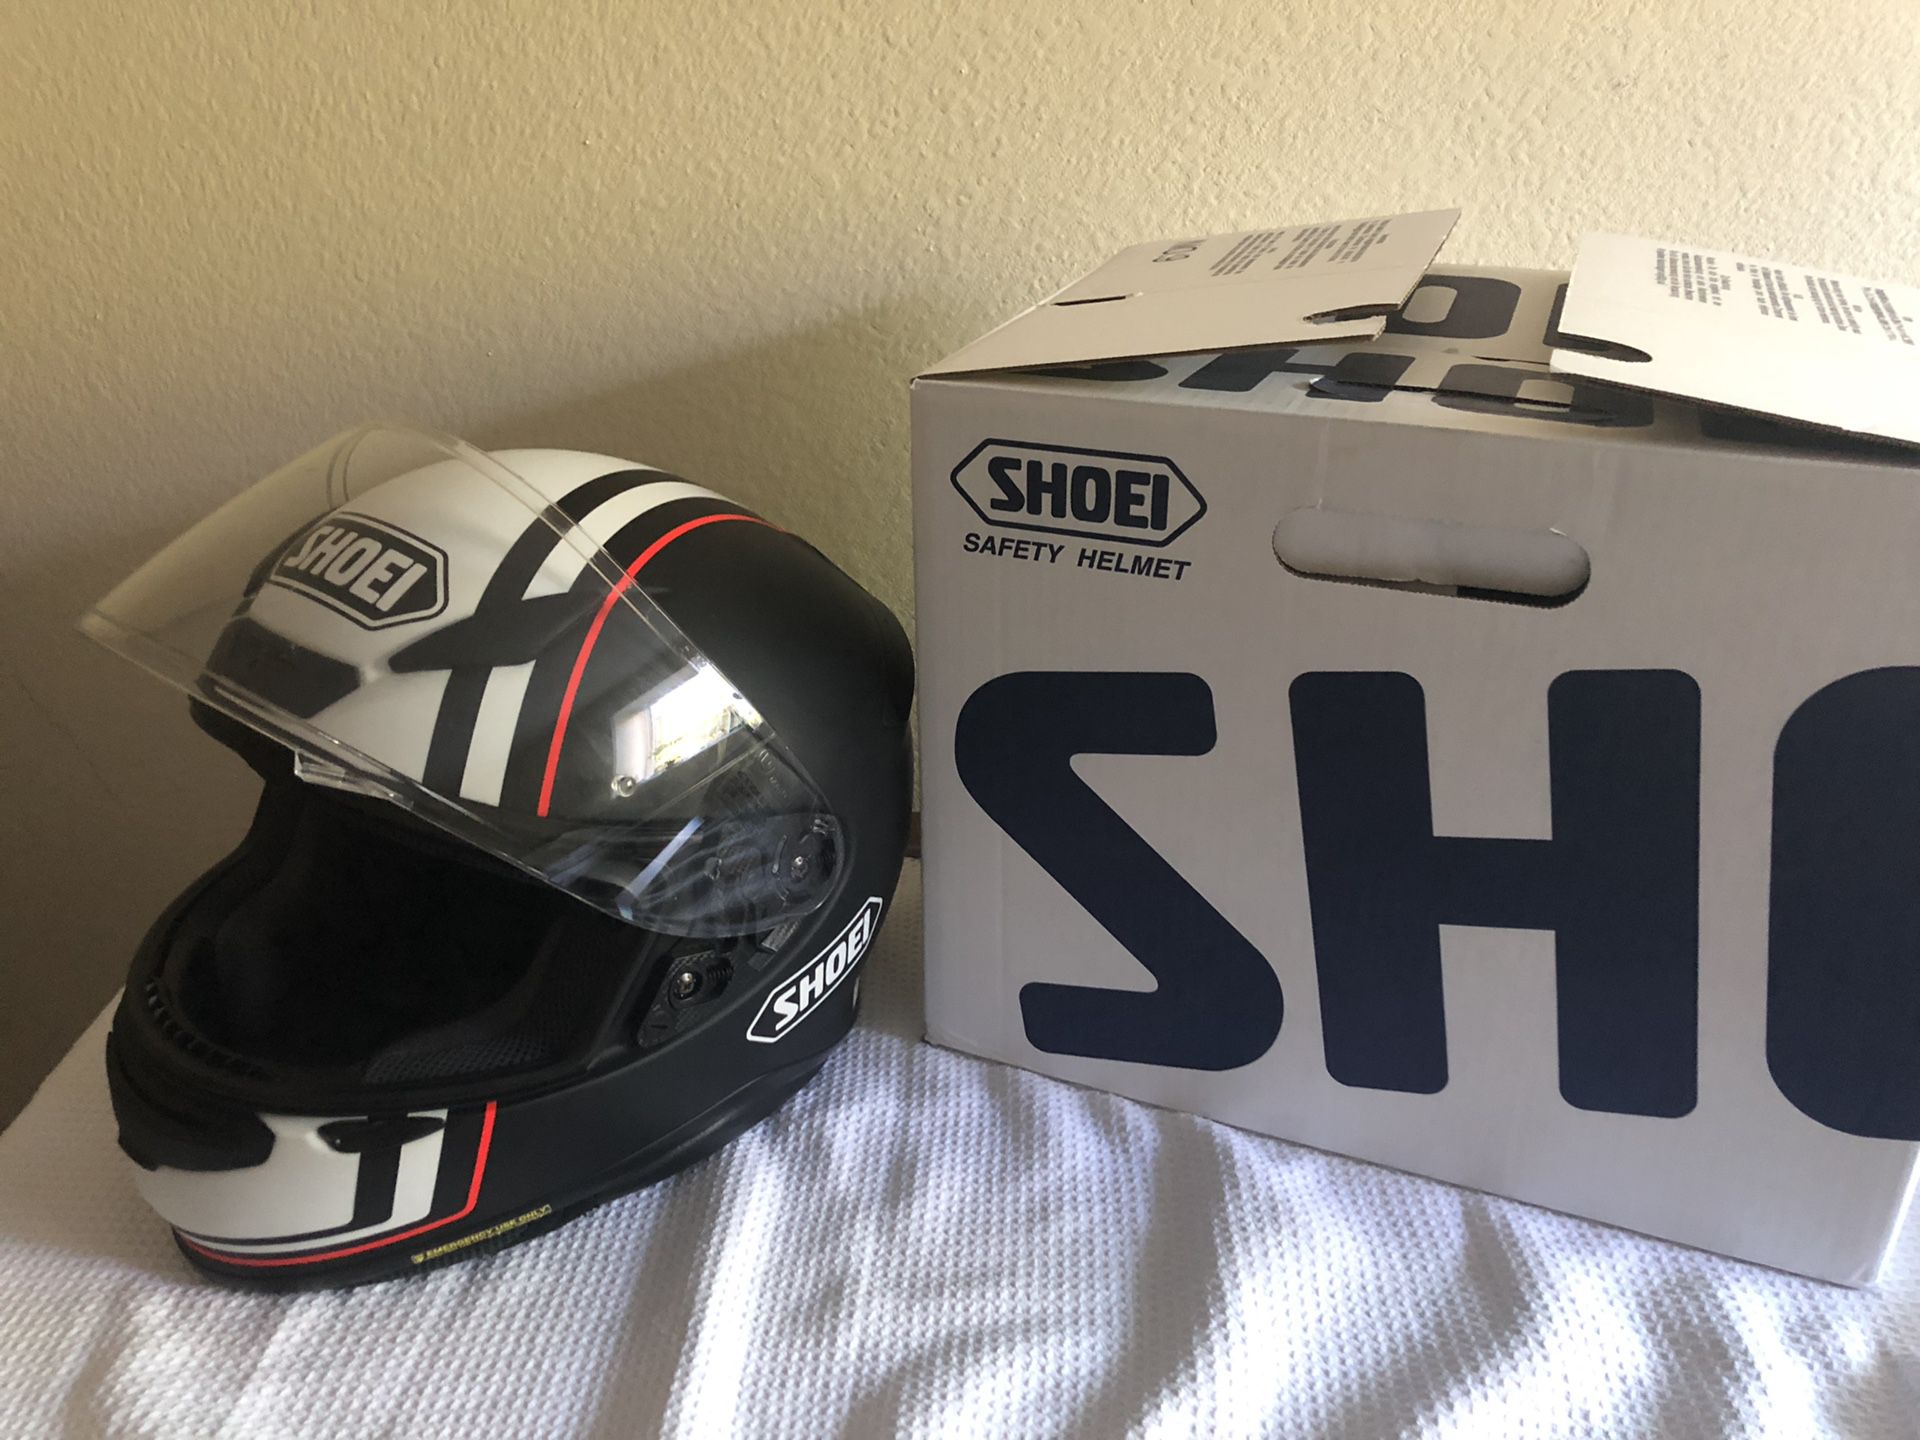 Shoes Rf1200 Motorcycle Helmet (Medium)